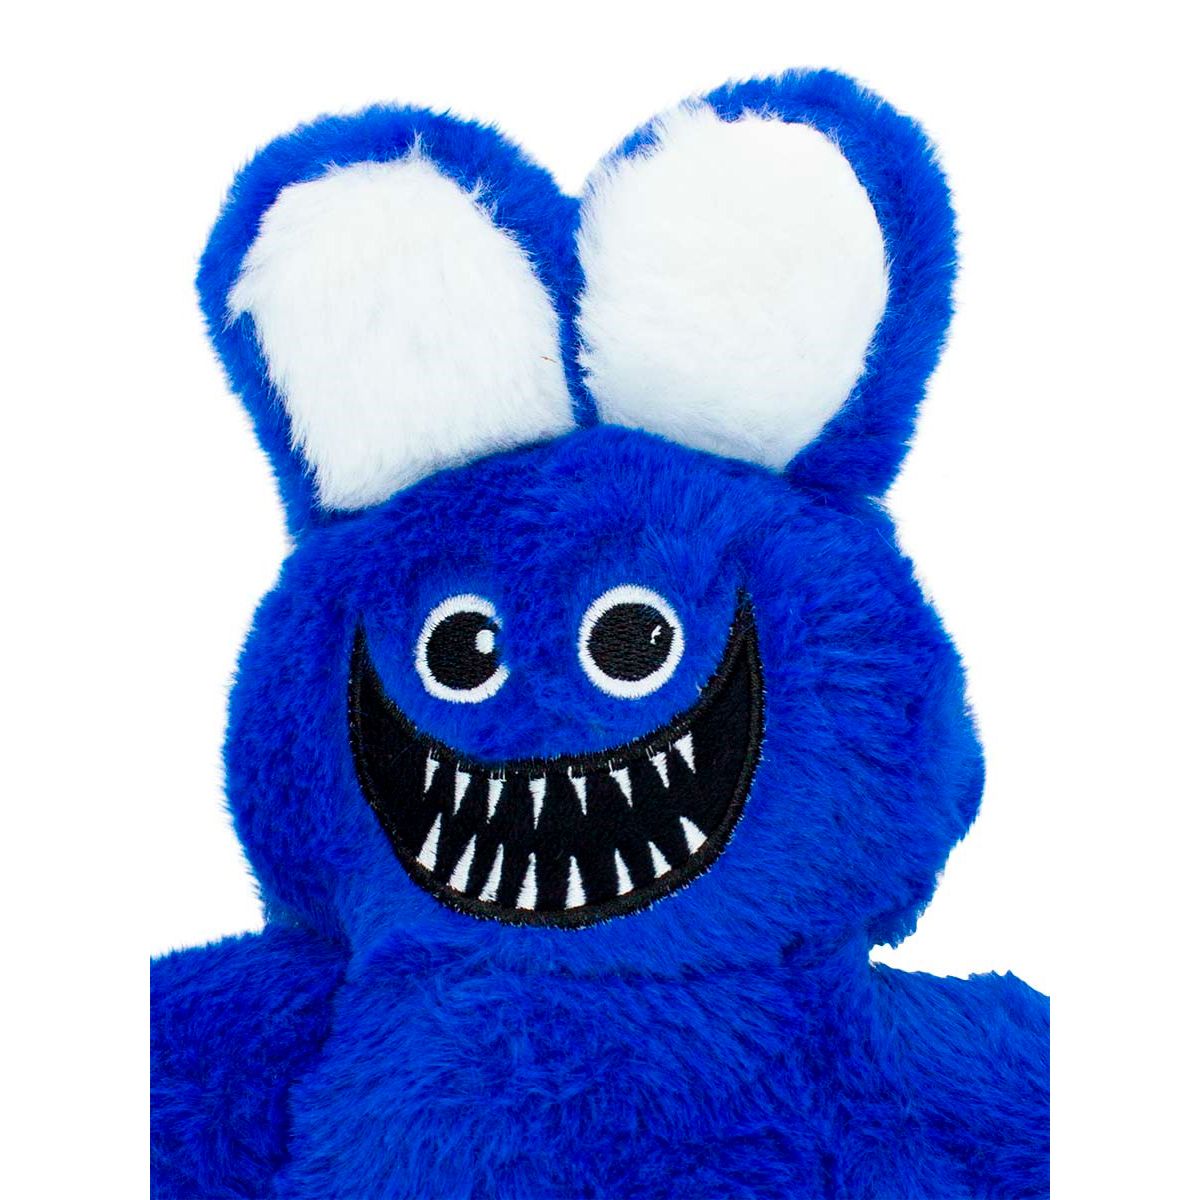 Мягкая игрушка Михи-Михи huggy Wuggy Мистер Хоппс синяя 30см - фото 4